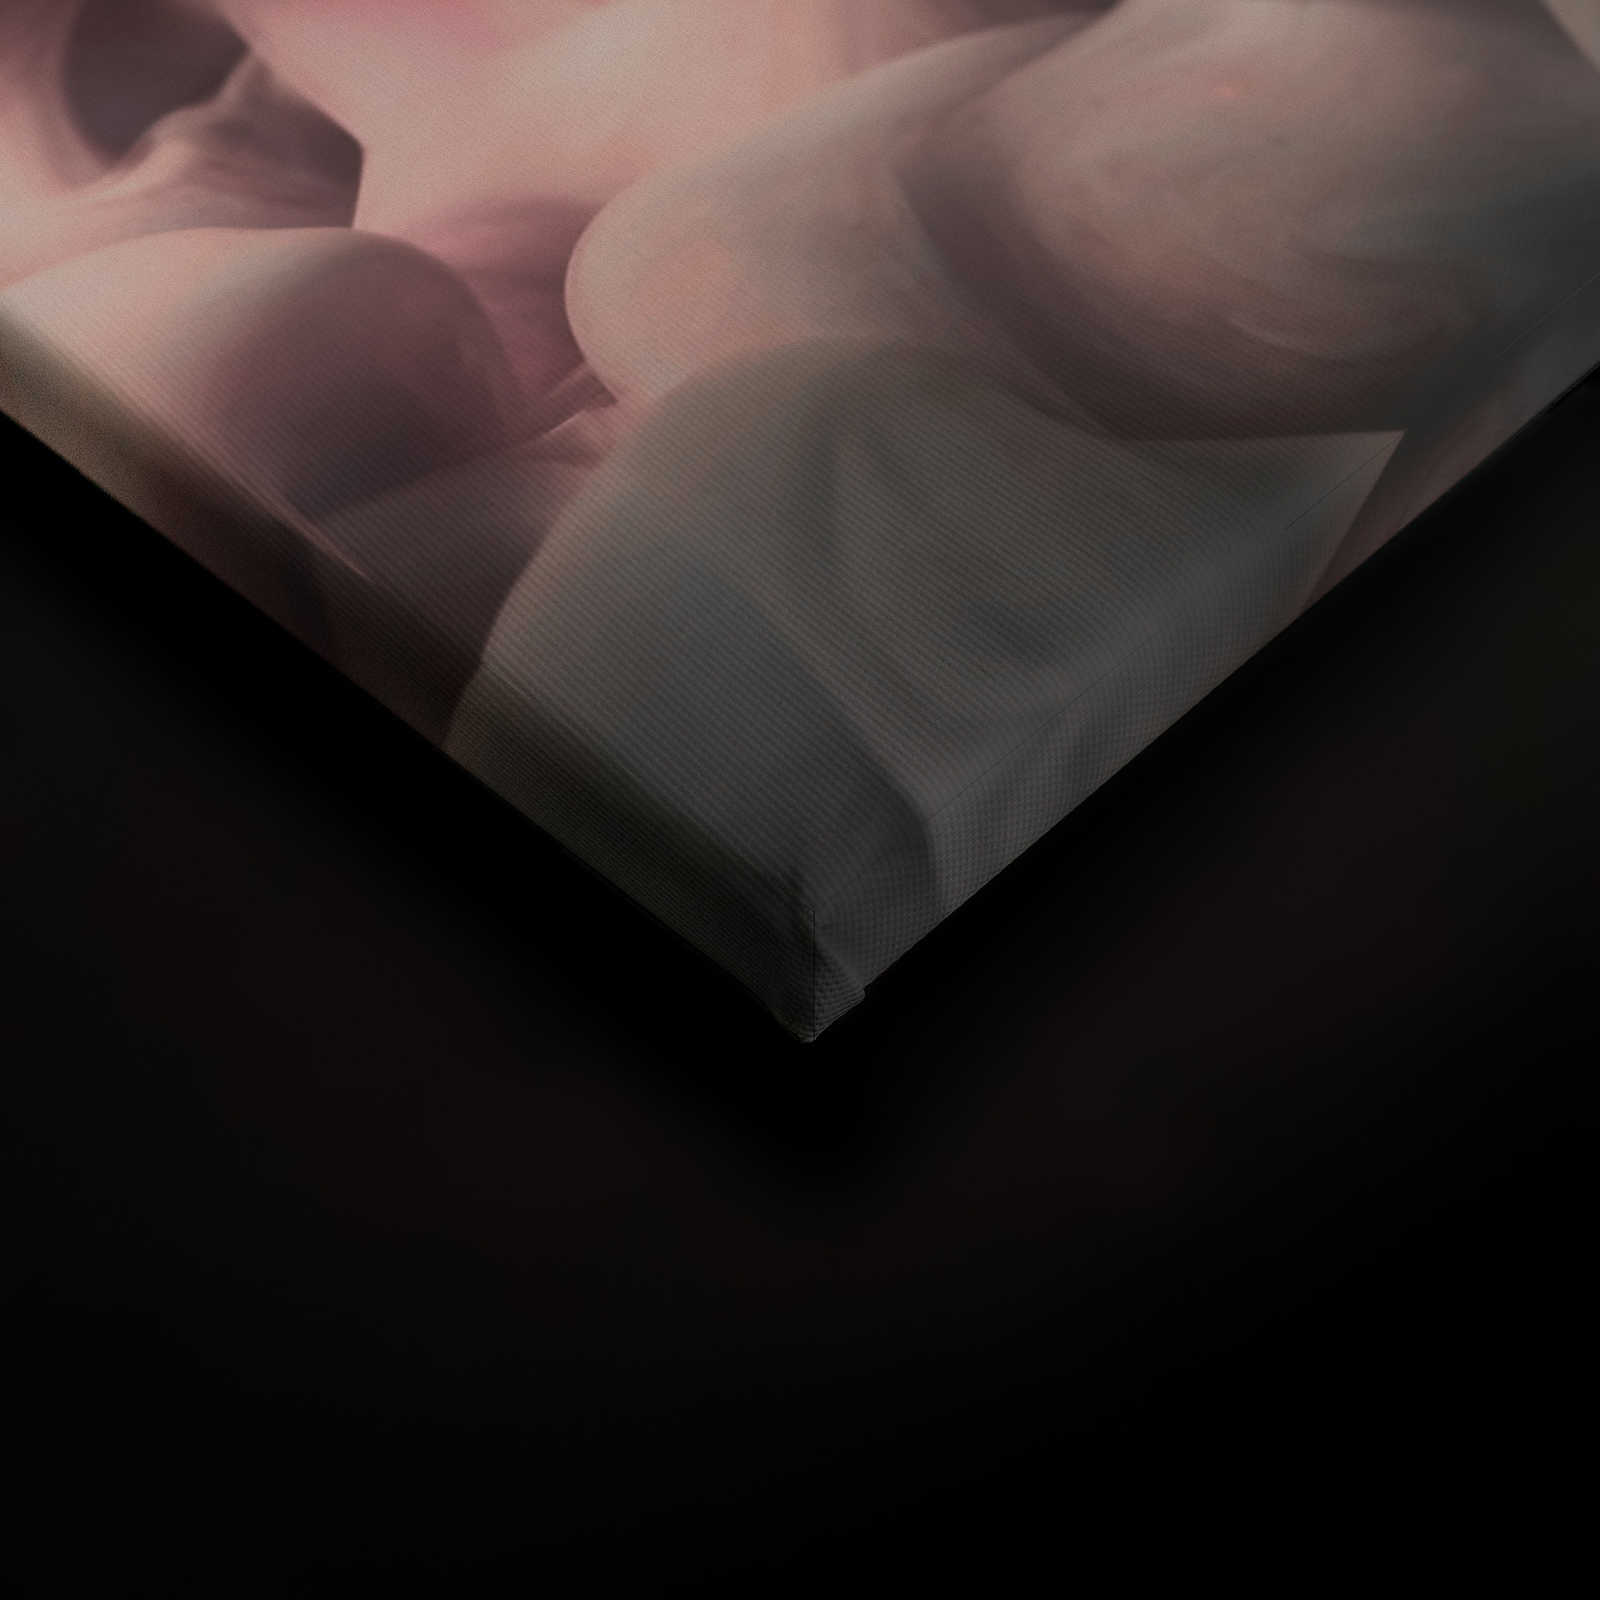             Farbiger Rauch Leinwand | Rosa, Grau, Weiß – 0,90 m x 0,60 m
        